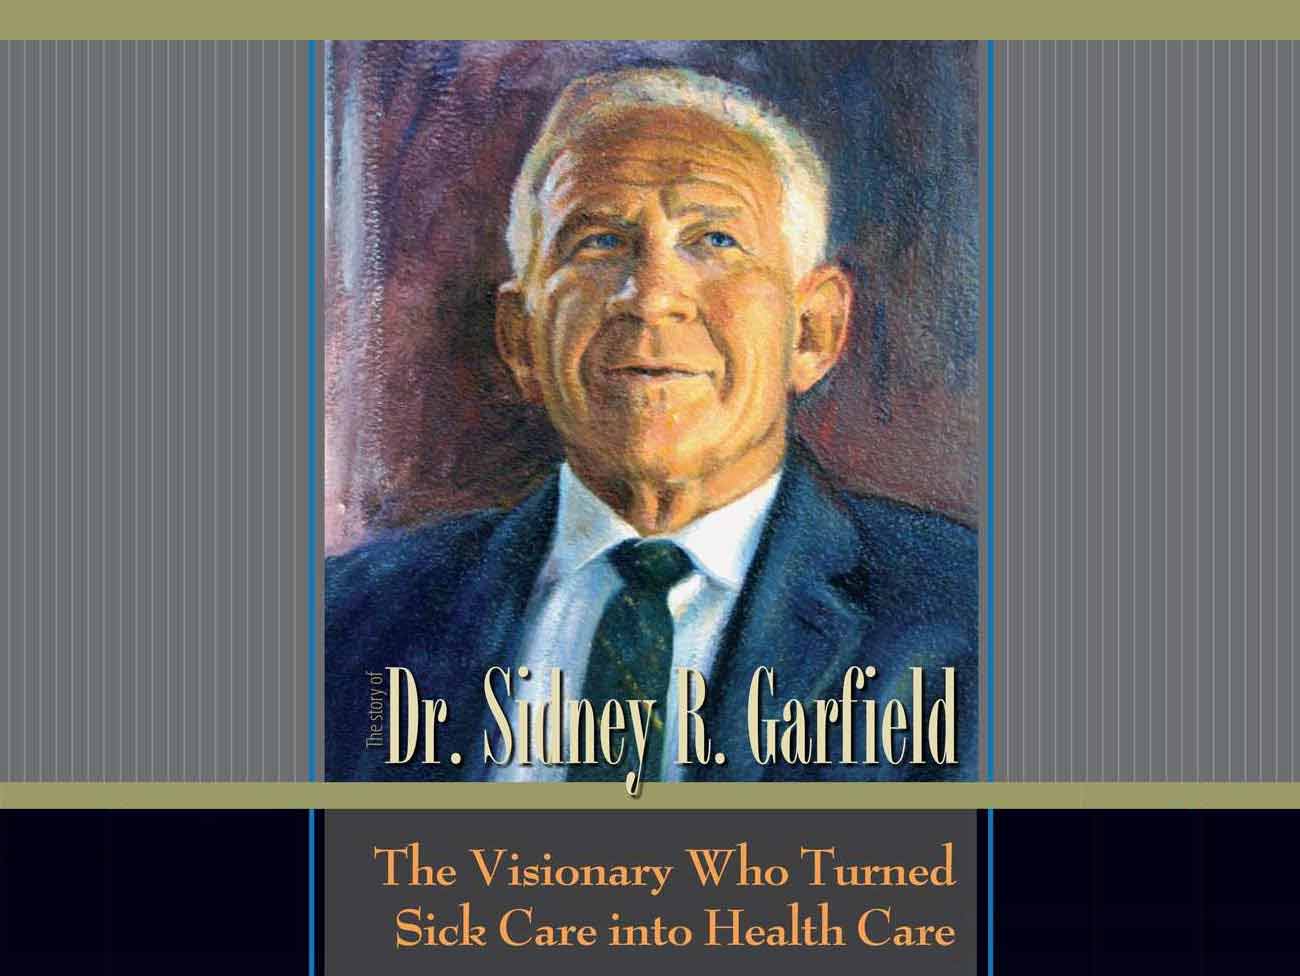 书的封面:“西德尼·r·加菲尔德医生的故事——把疾病护理变成健康护理的远见者”，配以加菲尔德医生的彩色插图。